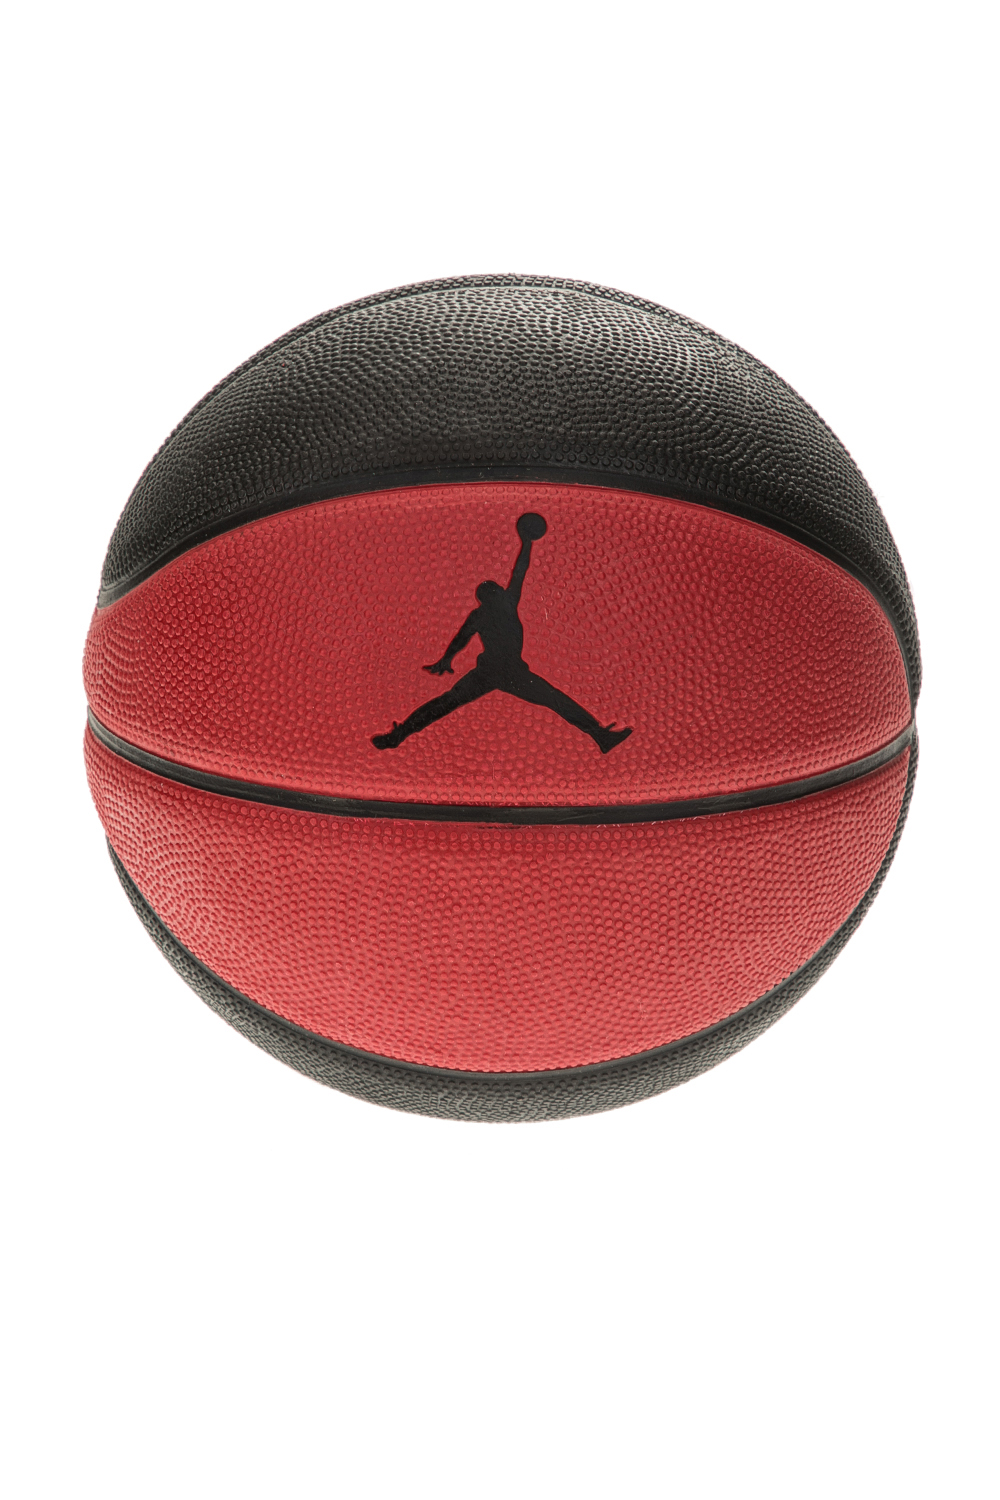 Ανδρικά/Αξεσουάρ/Αθλητικά Είδη/Μπάλες NIKE - Μπάλα μπάσκετ NIKE JORDAN SKILLS